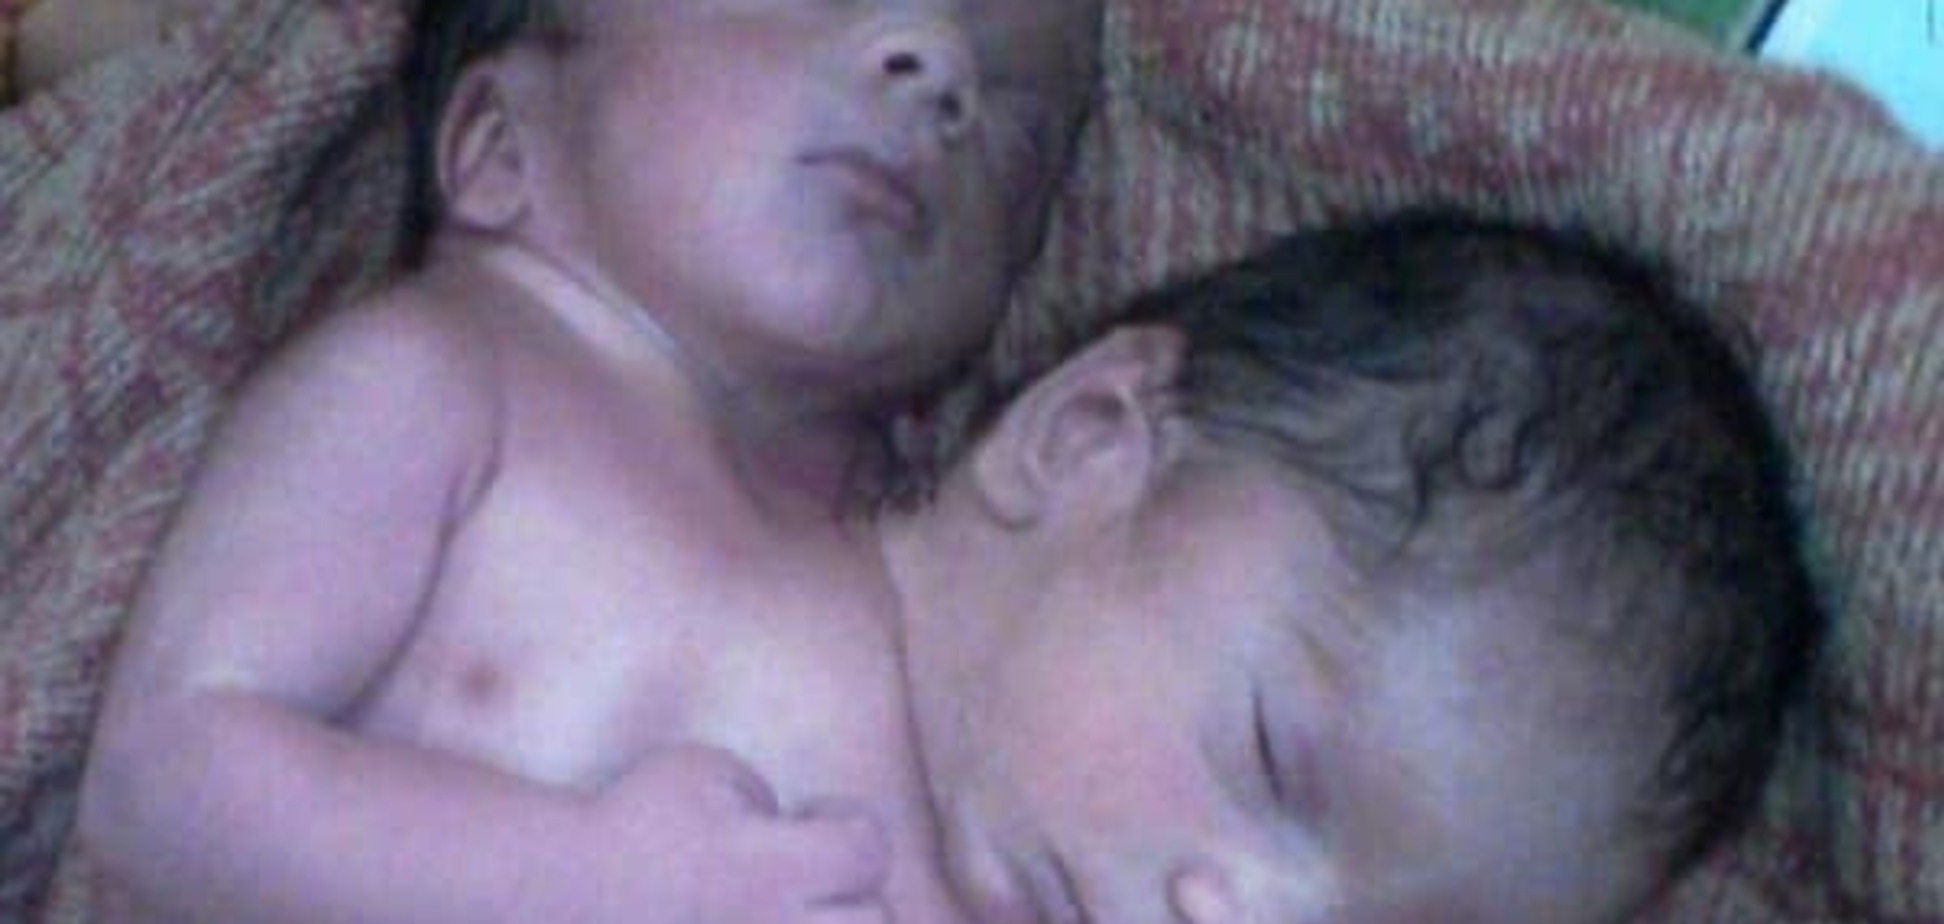 Чудо природы: в Индии родился двухголовый ребенок. Фотофакт